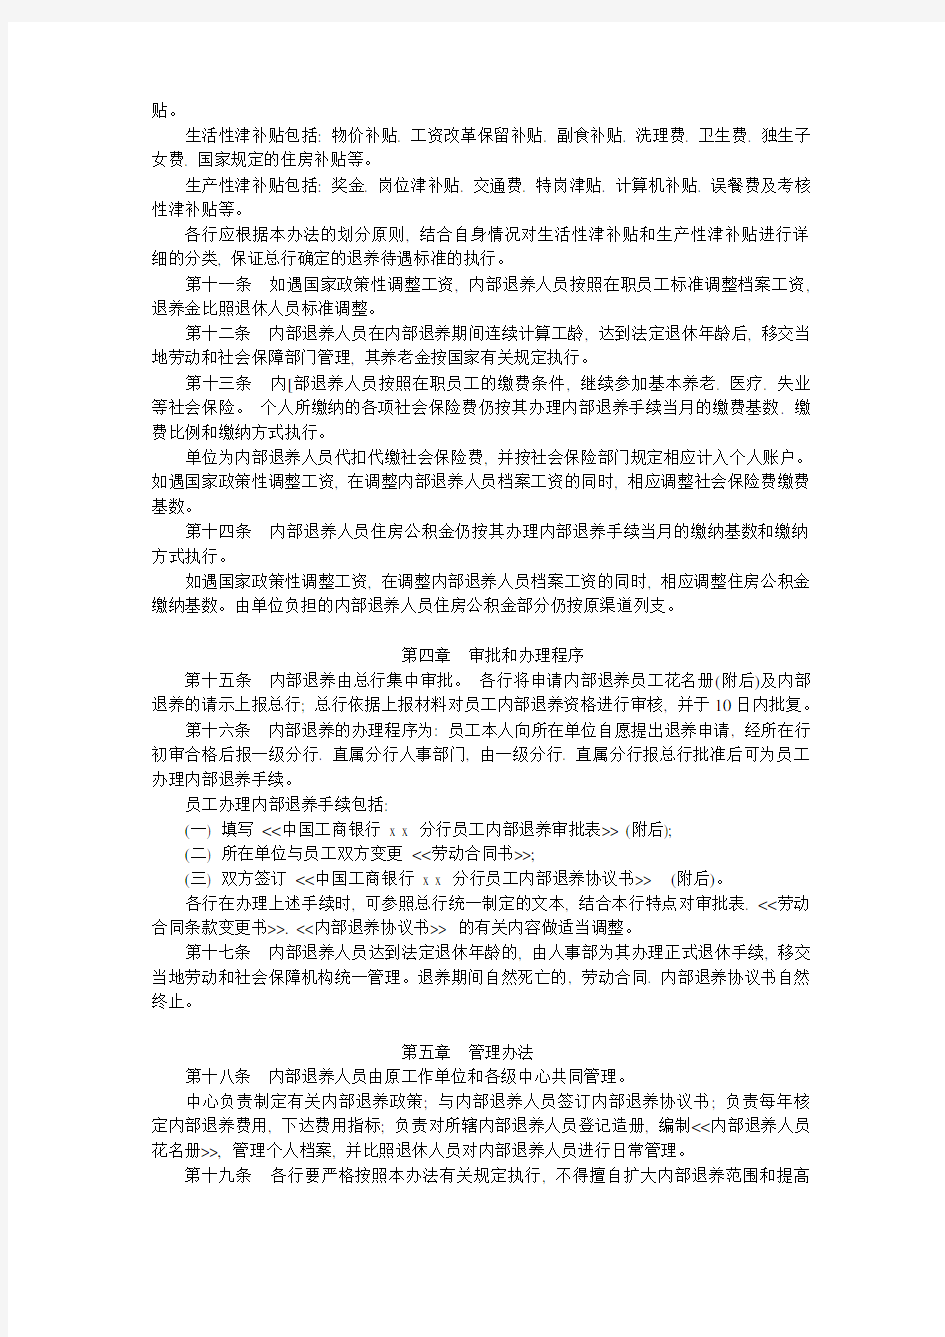 (完整版)中国工商银行员工内部退养管理办法